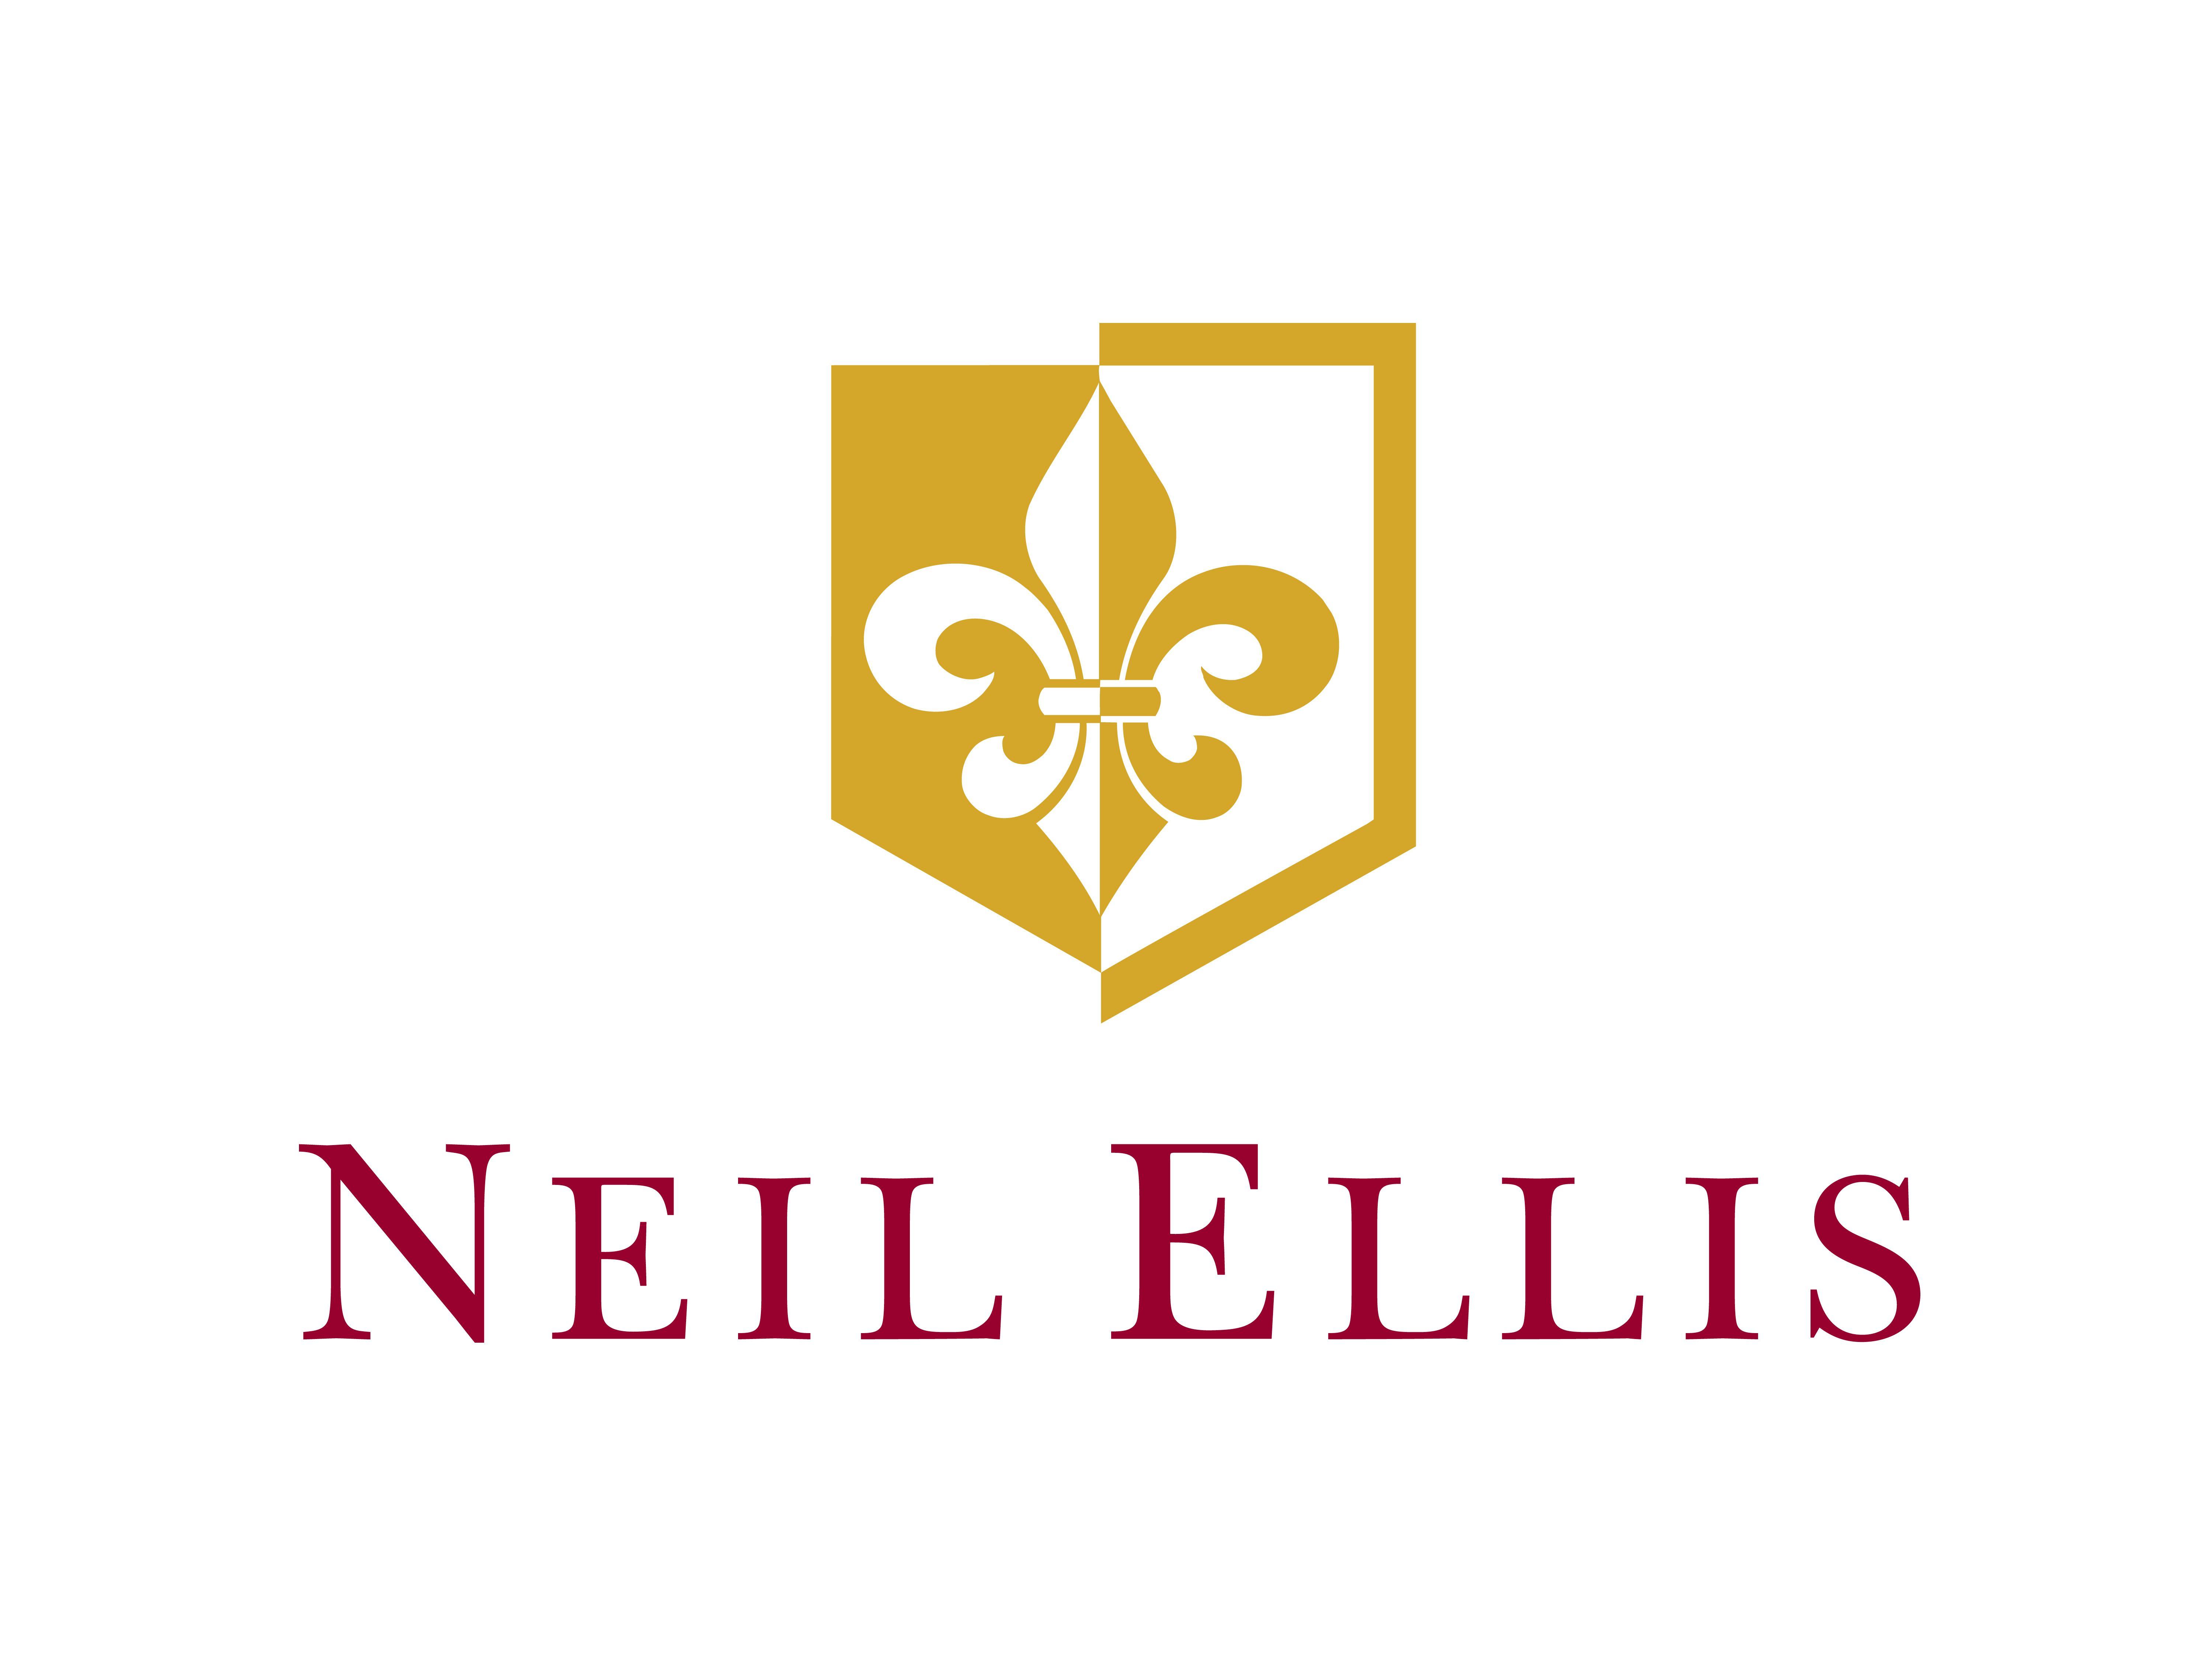 Ellis Logo - Neil Ellis joins Gonzalez Byass UK